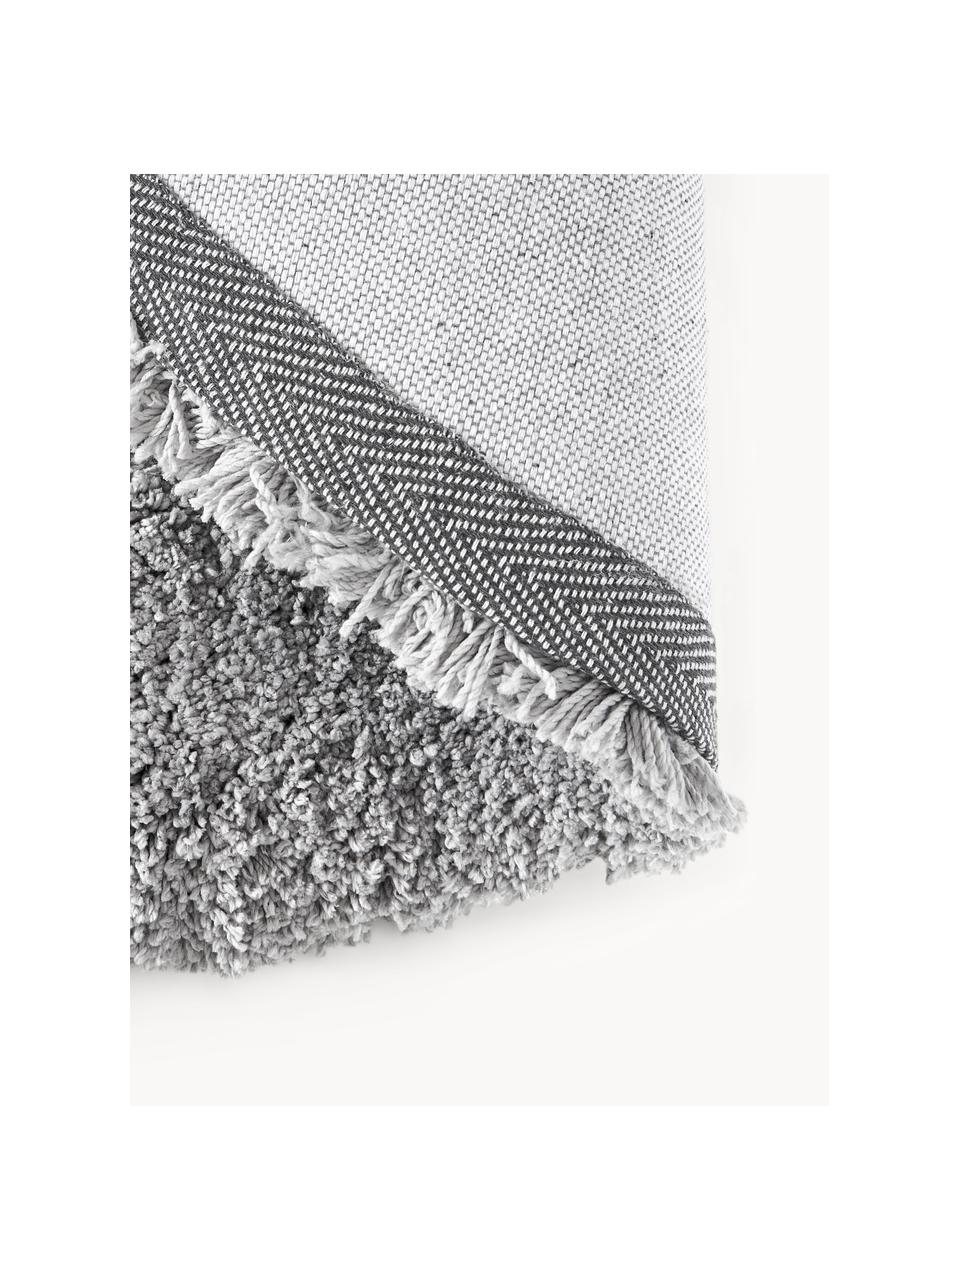 Načechraný kulatý koberec s vysokým vlasem Leighton, Šedá, Ø 120 cm (velikost S)